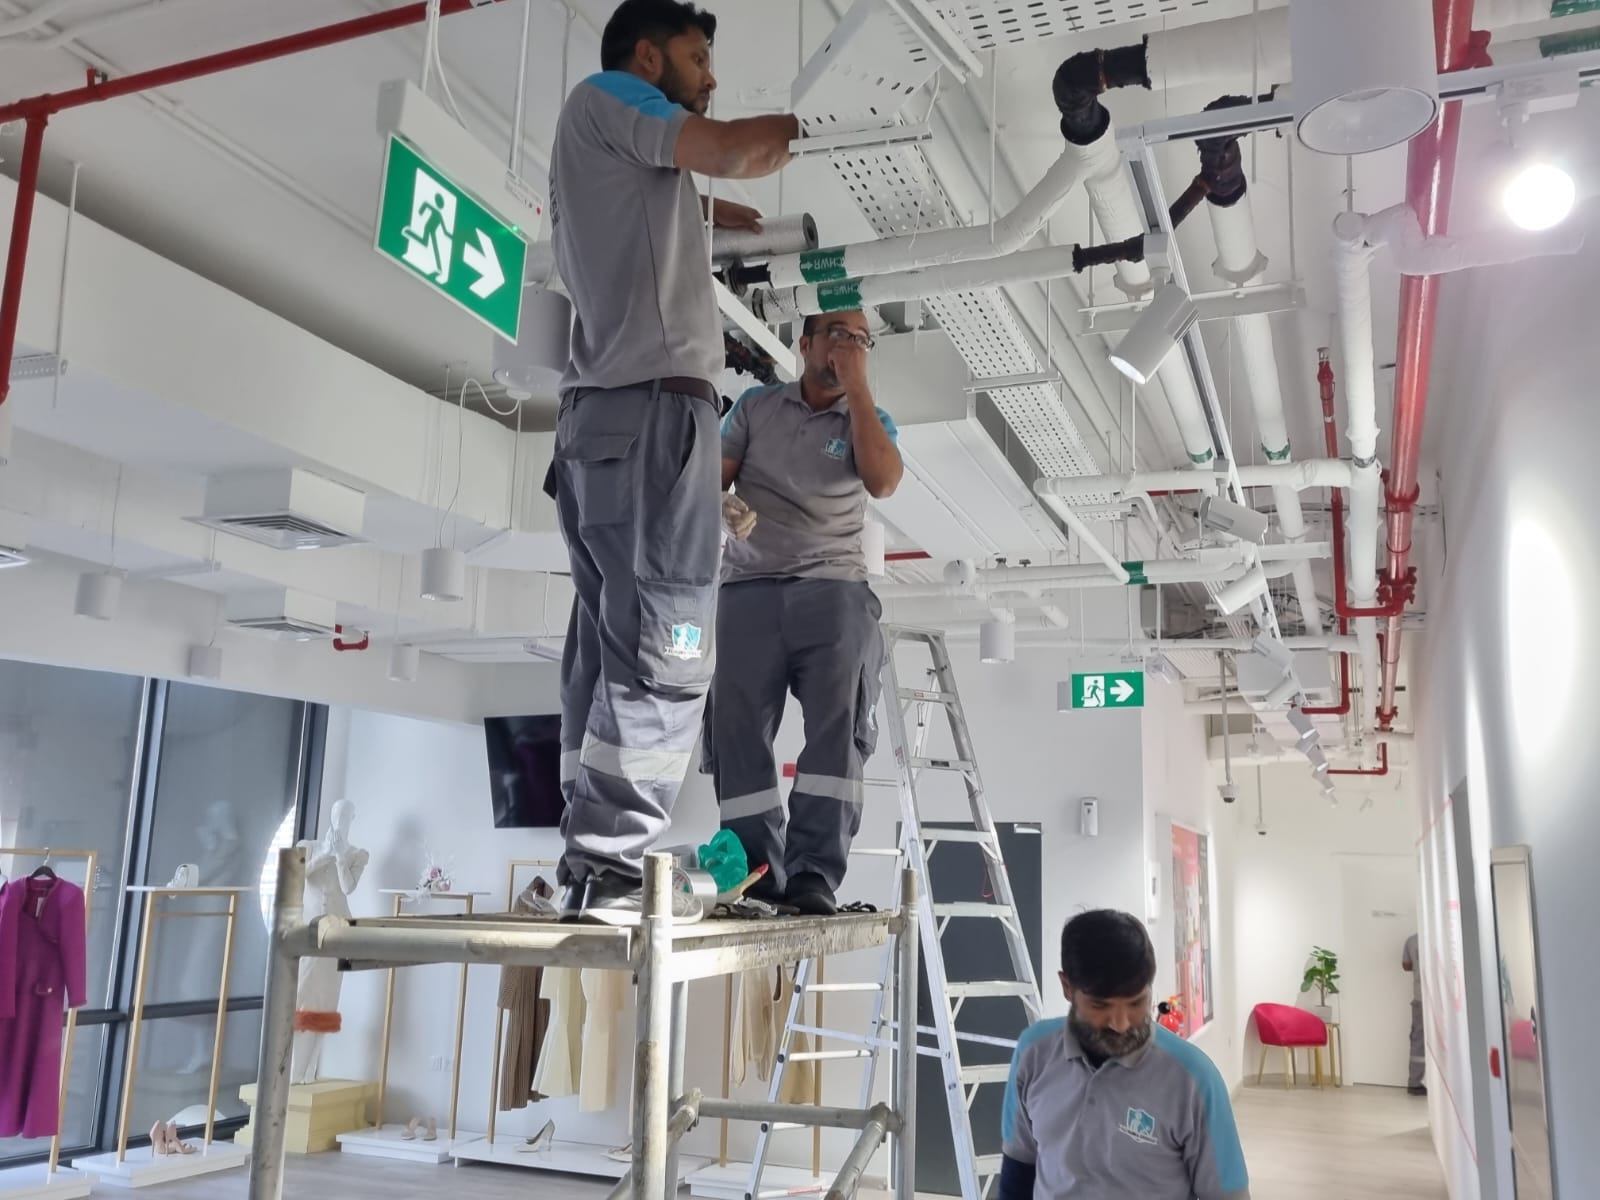 AC Repair Services in Dubai, UAE